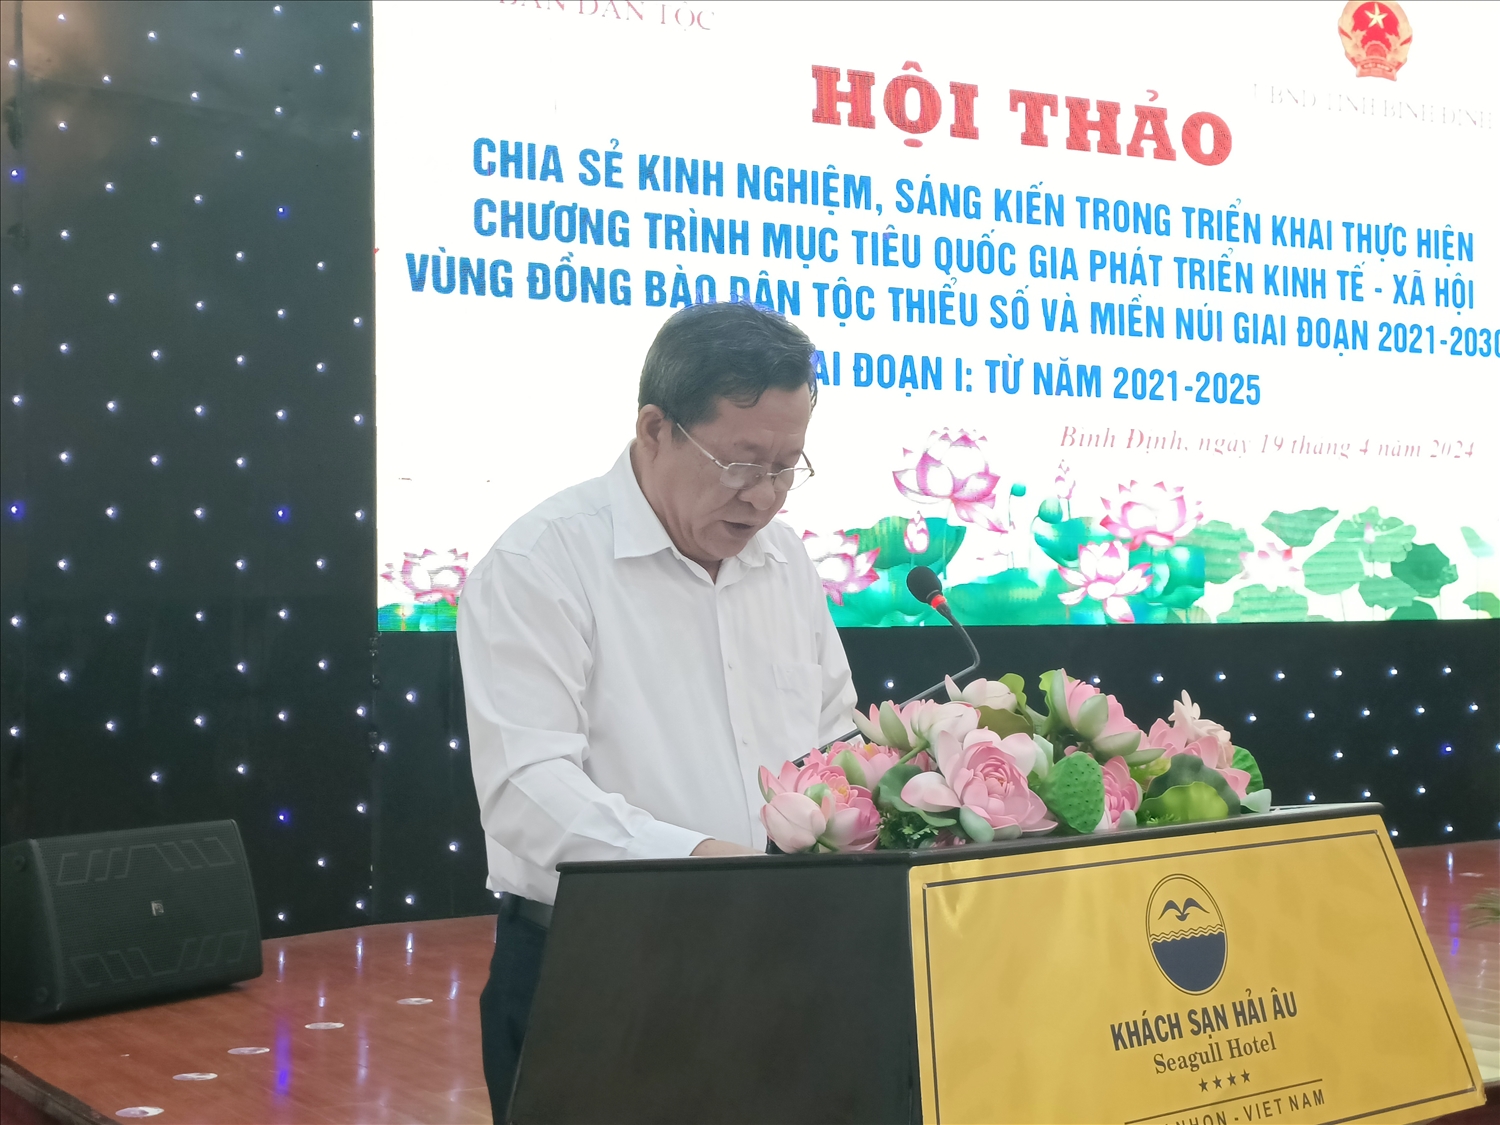 Ông Bùi Tiến Dũng, Phó Trưởng ban Ban Dân tộc Bình Định phát biểu tại Hội thảo